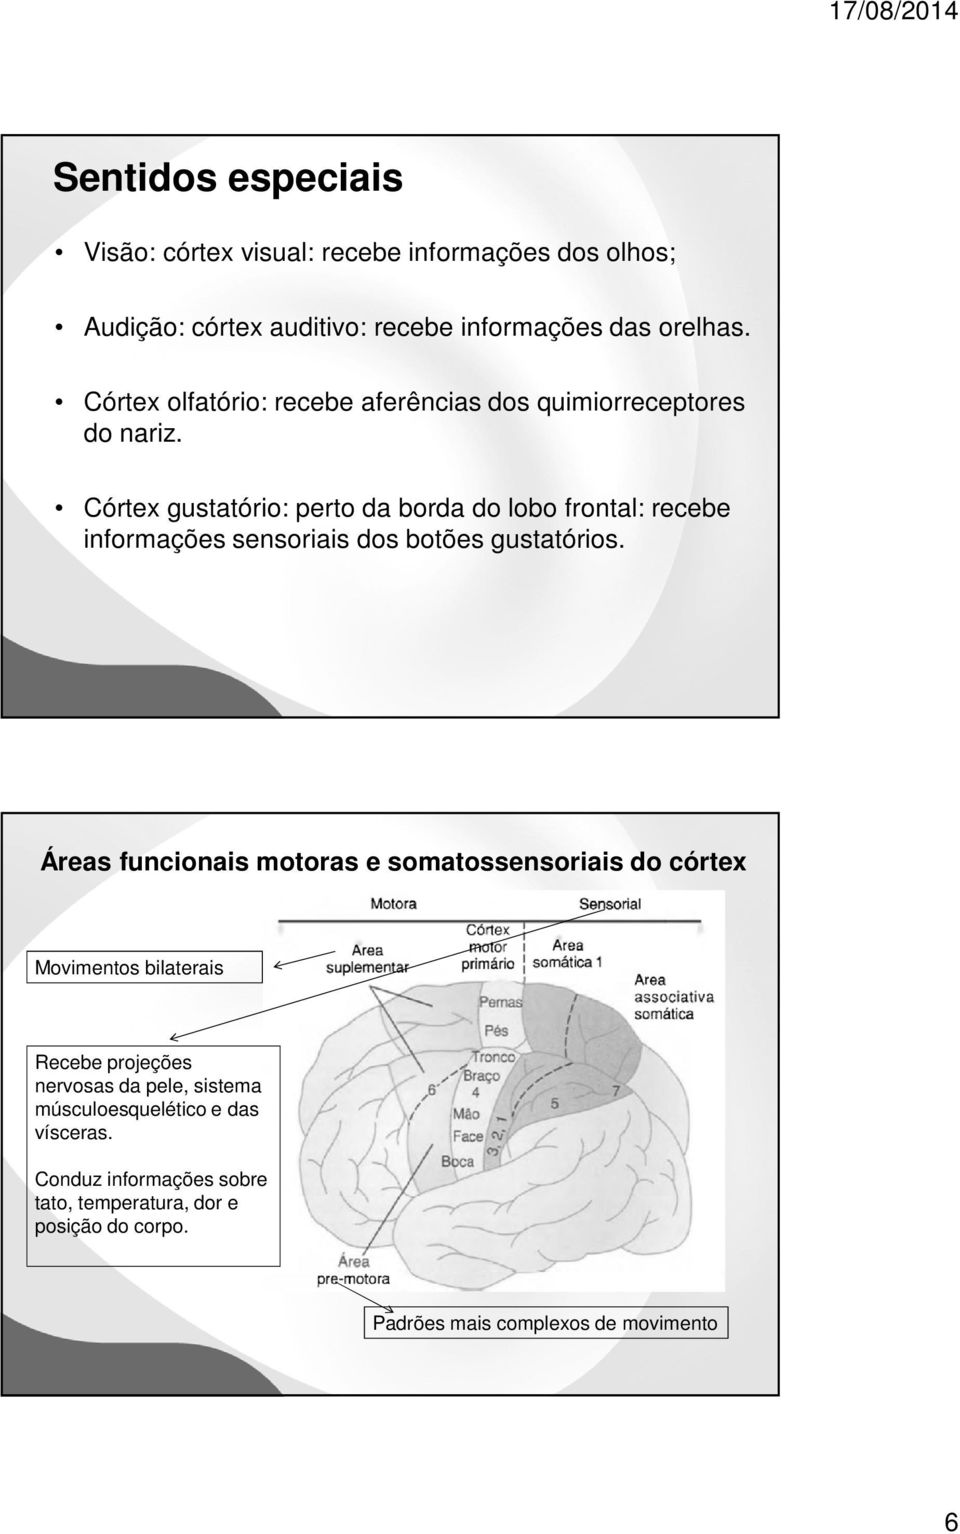 Córtex gustatório: perto da borda do lobo frontal: recebe informações sensoriais dos botões gustatórios.